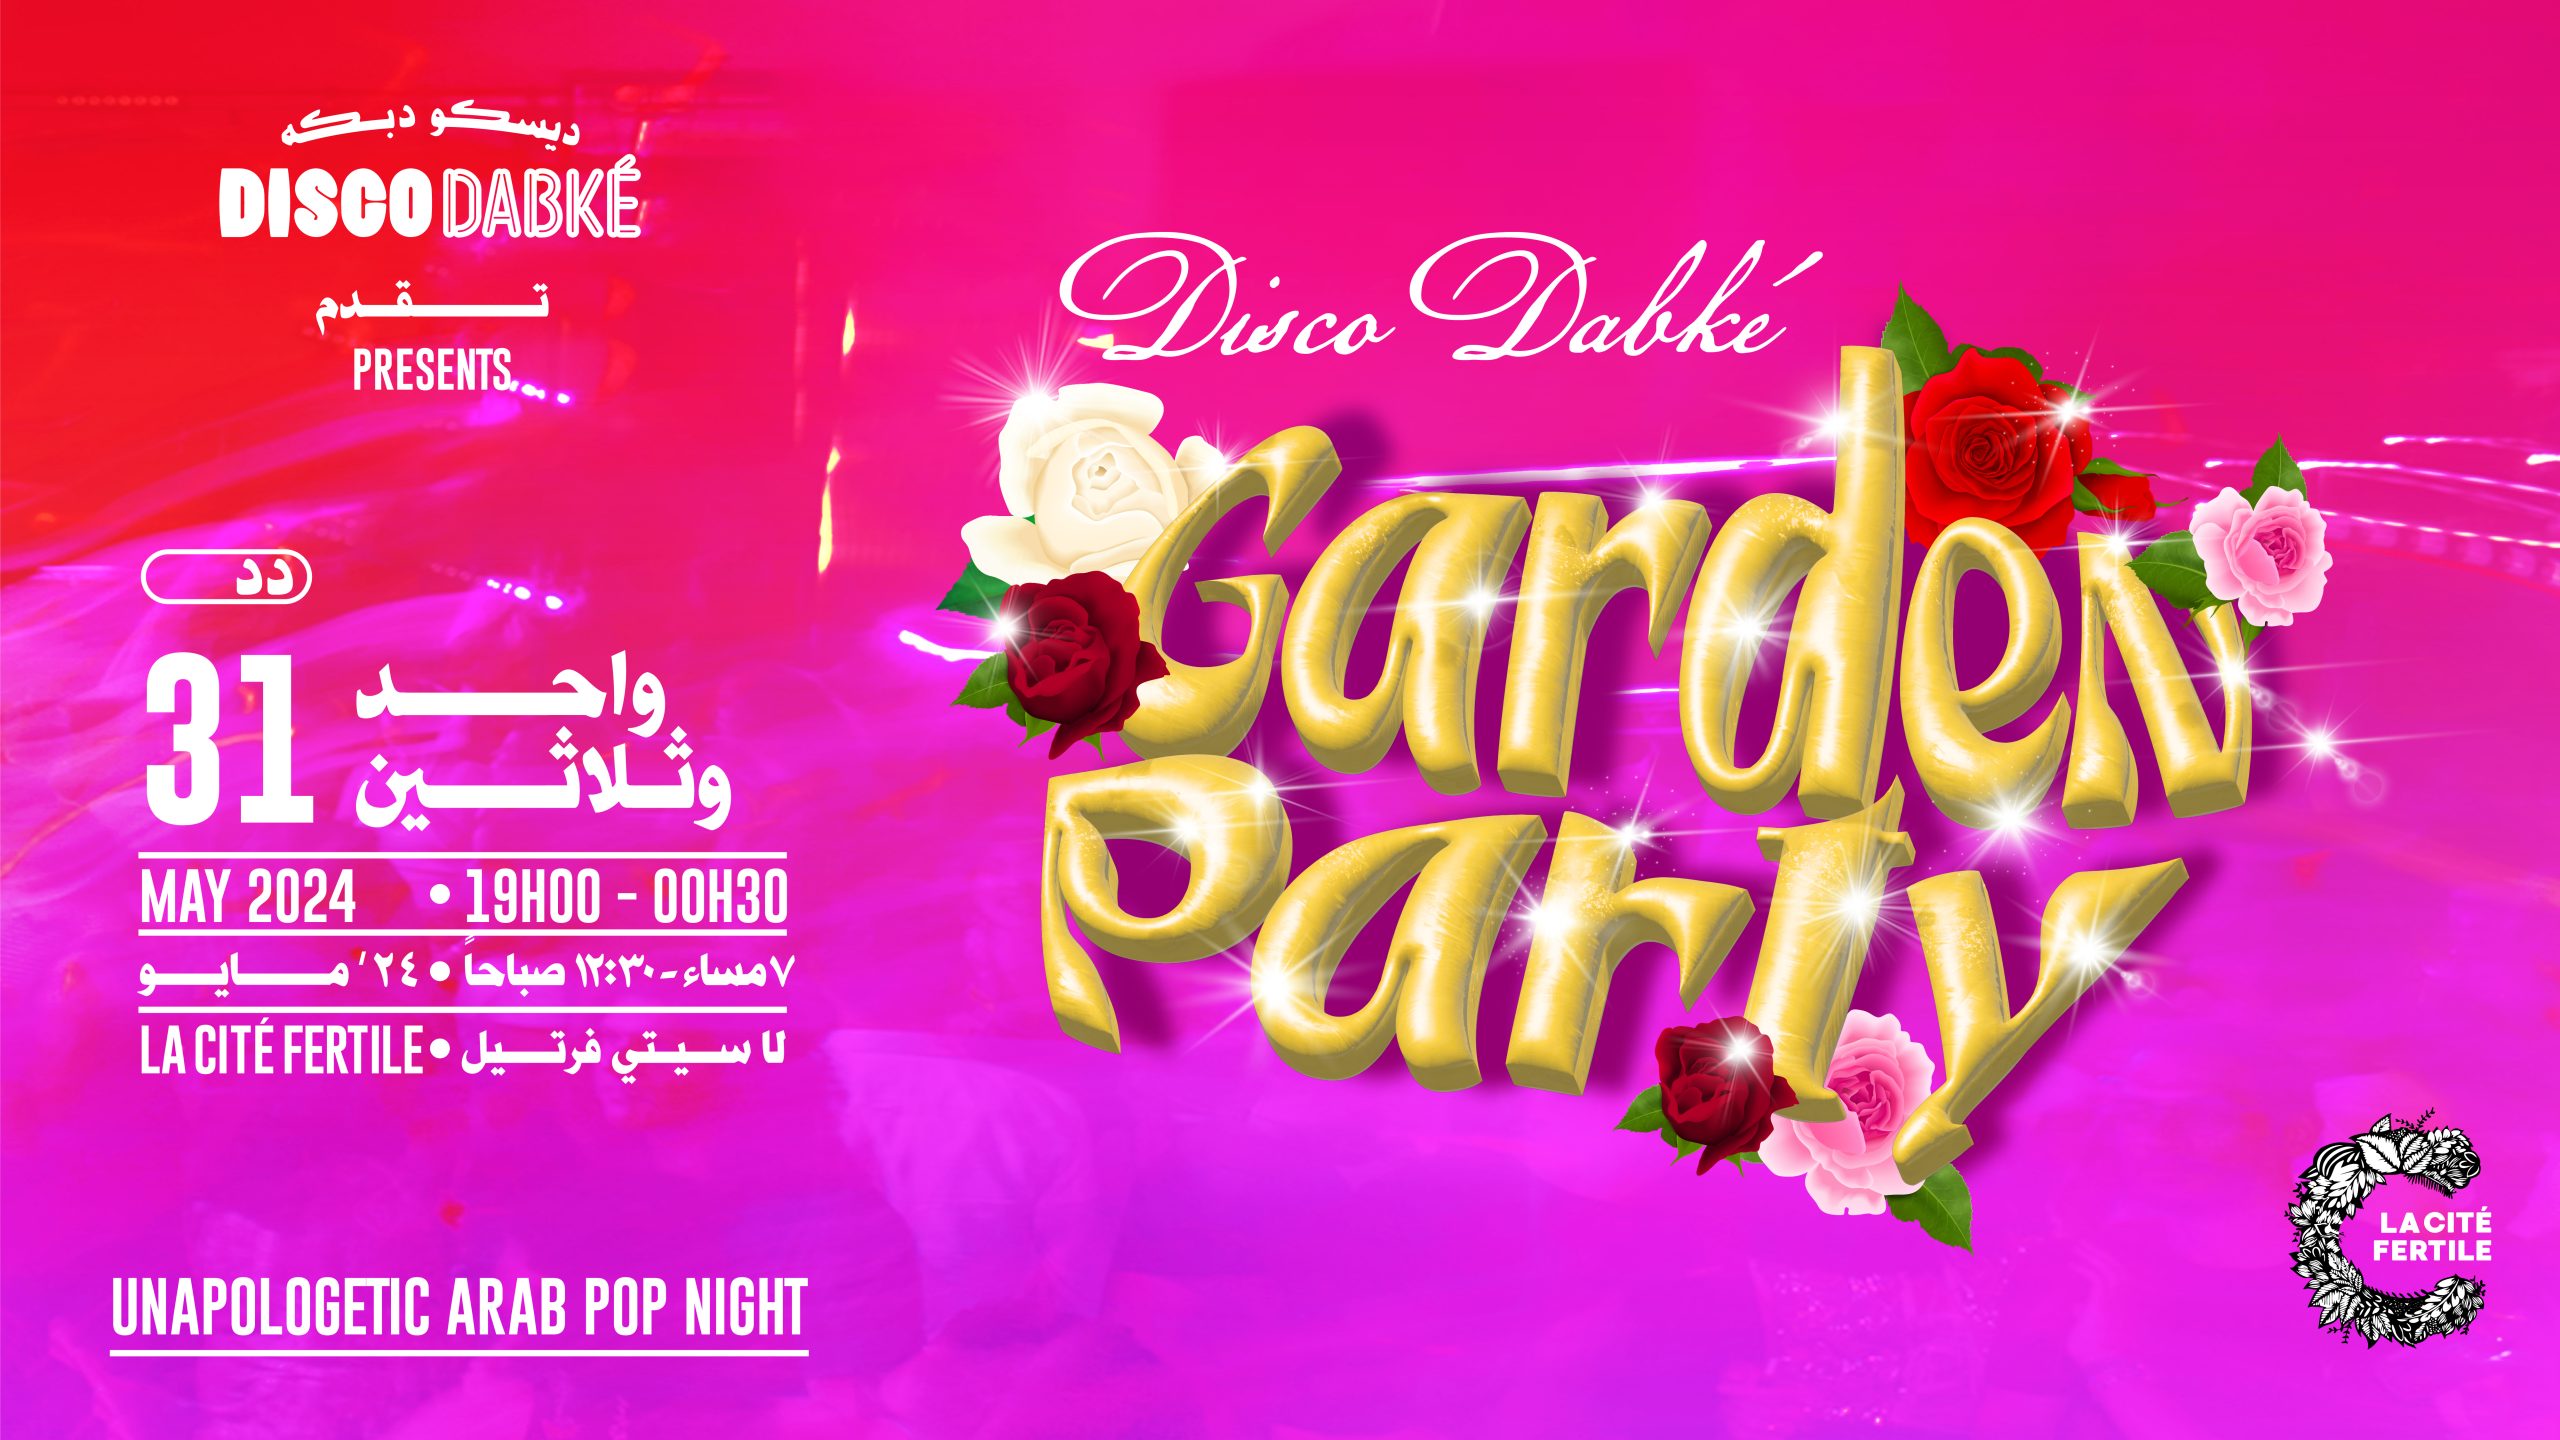 Disco dabké garden party